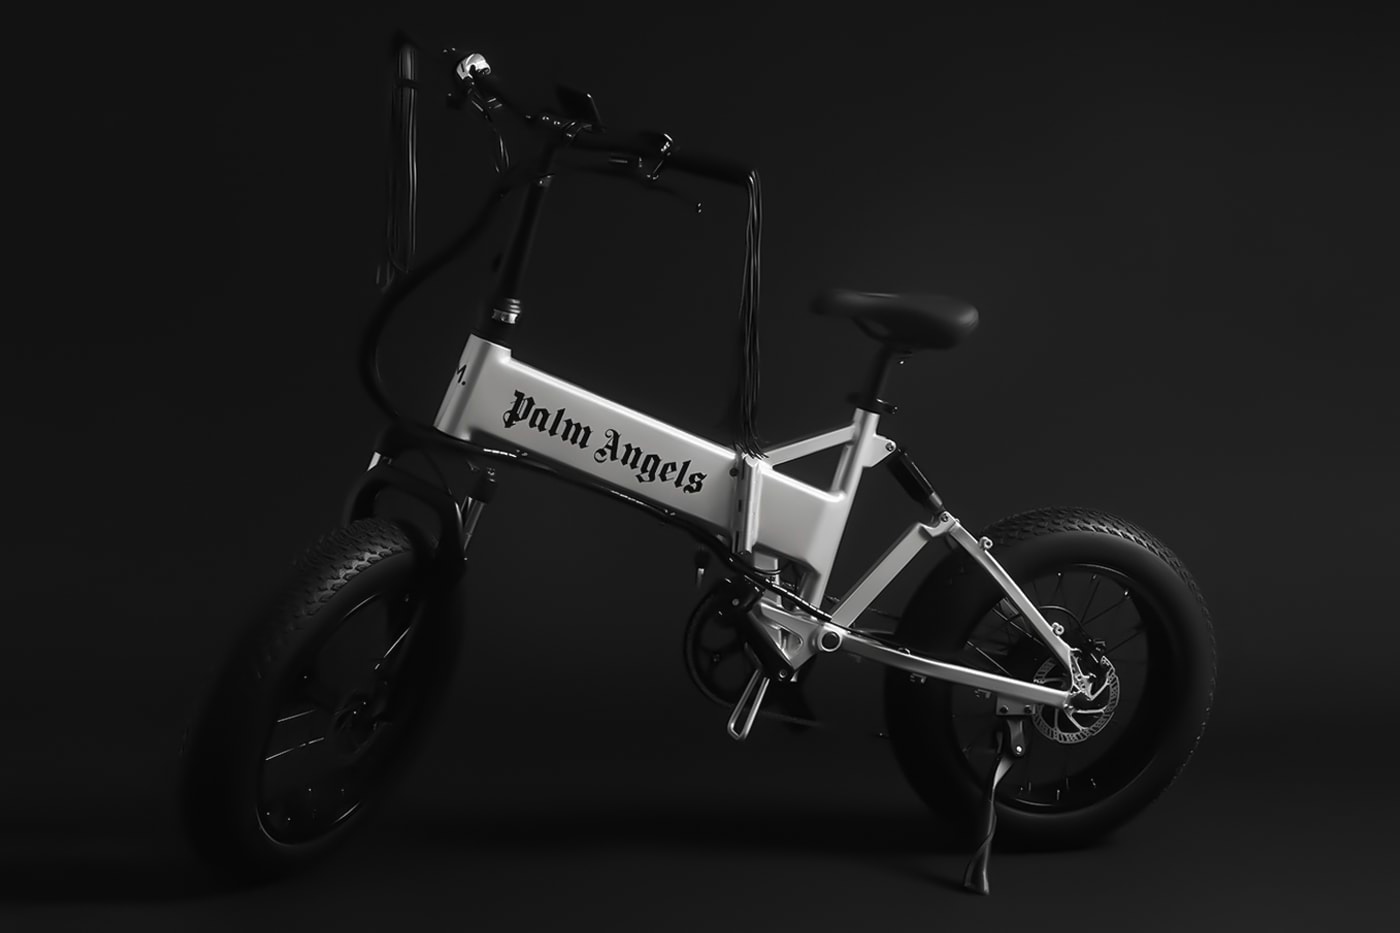 팜 앤젤스 x. 메이트.바이크 한정판 전기 자전거가 곧 출시된다, 